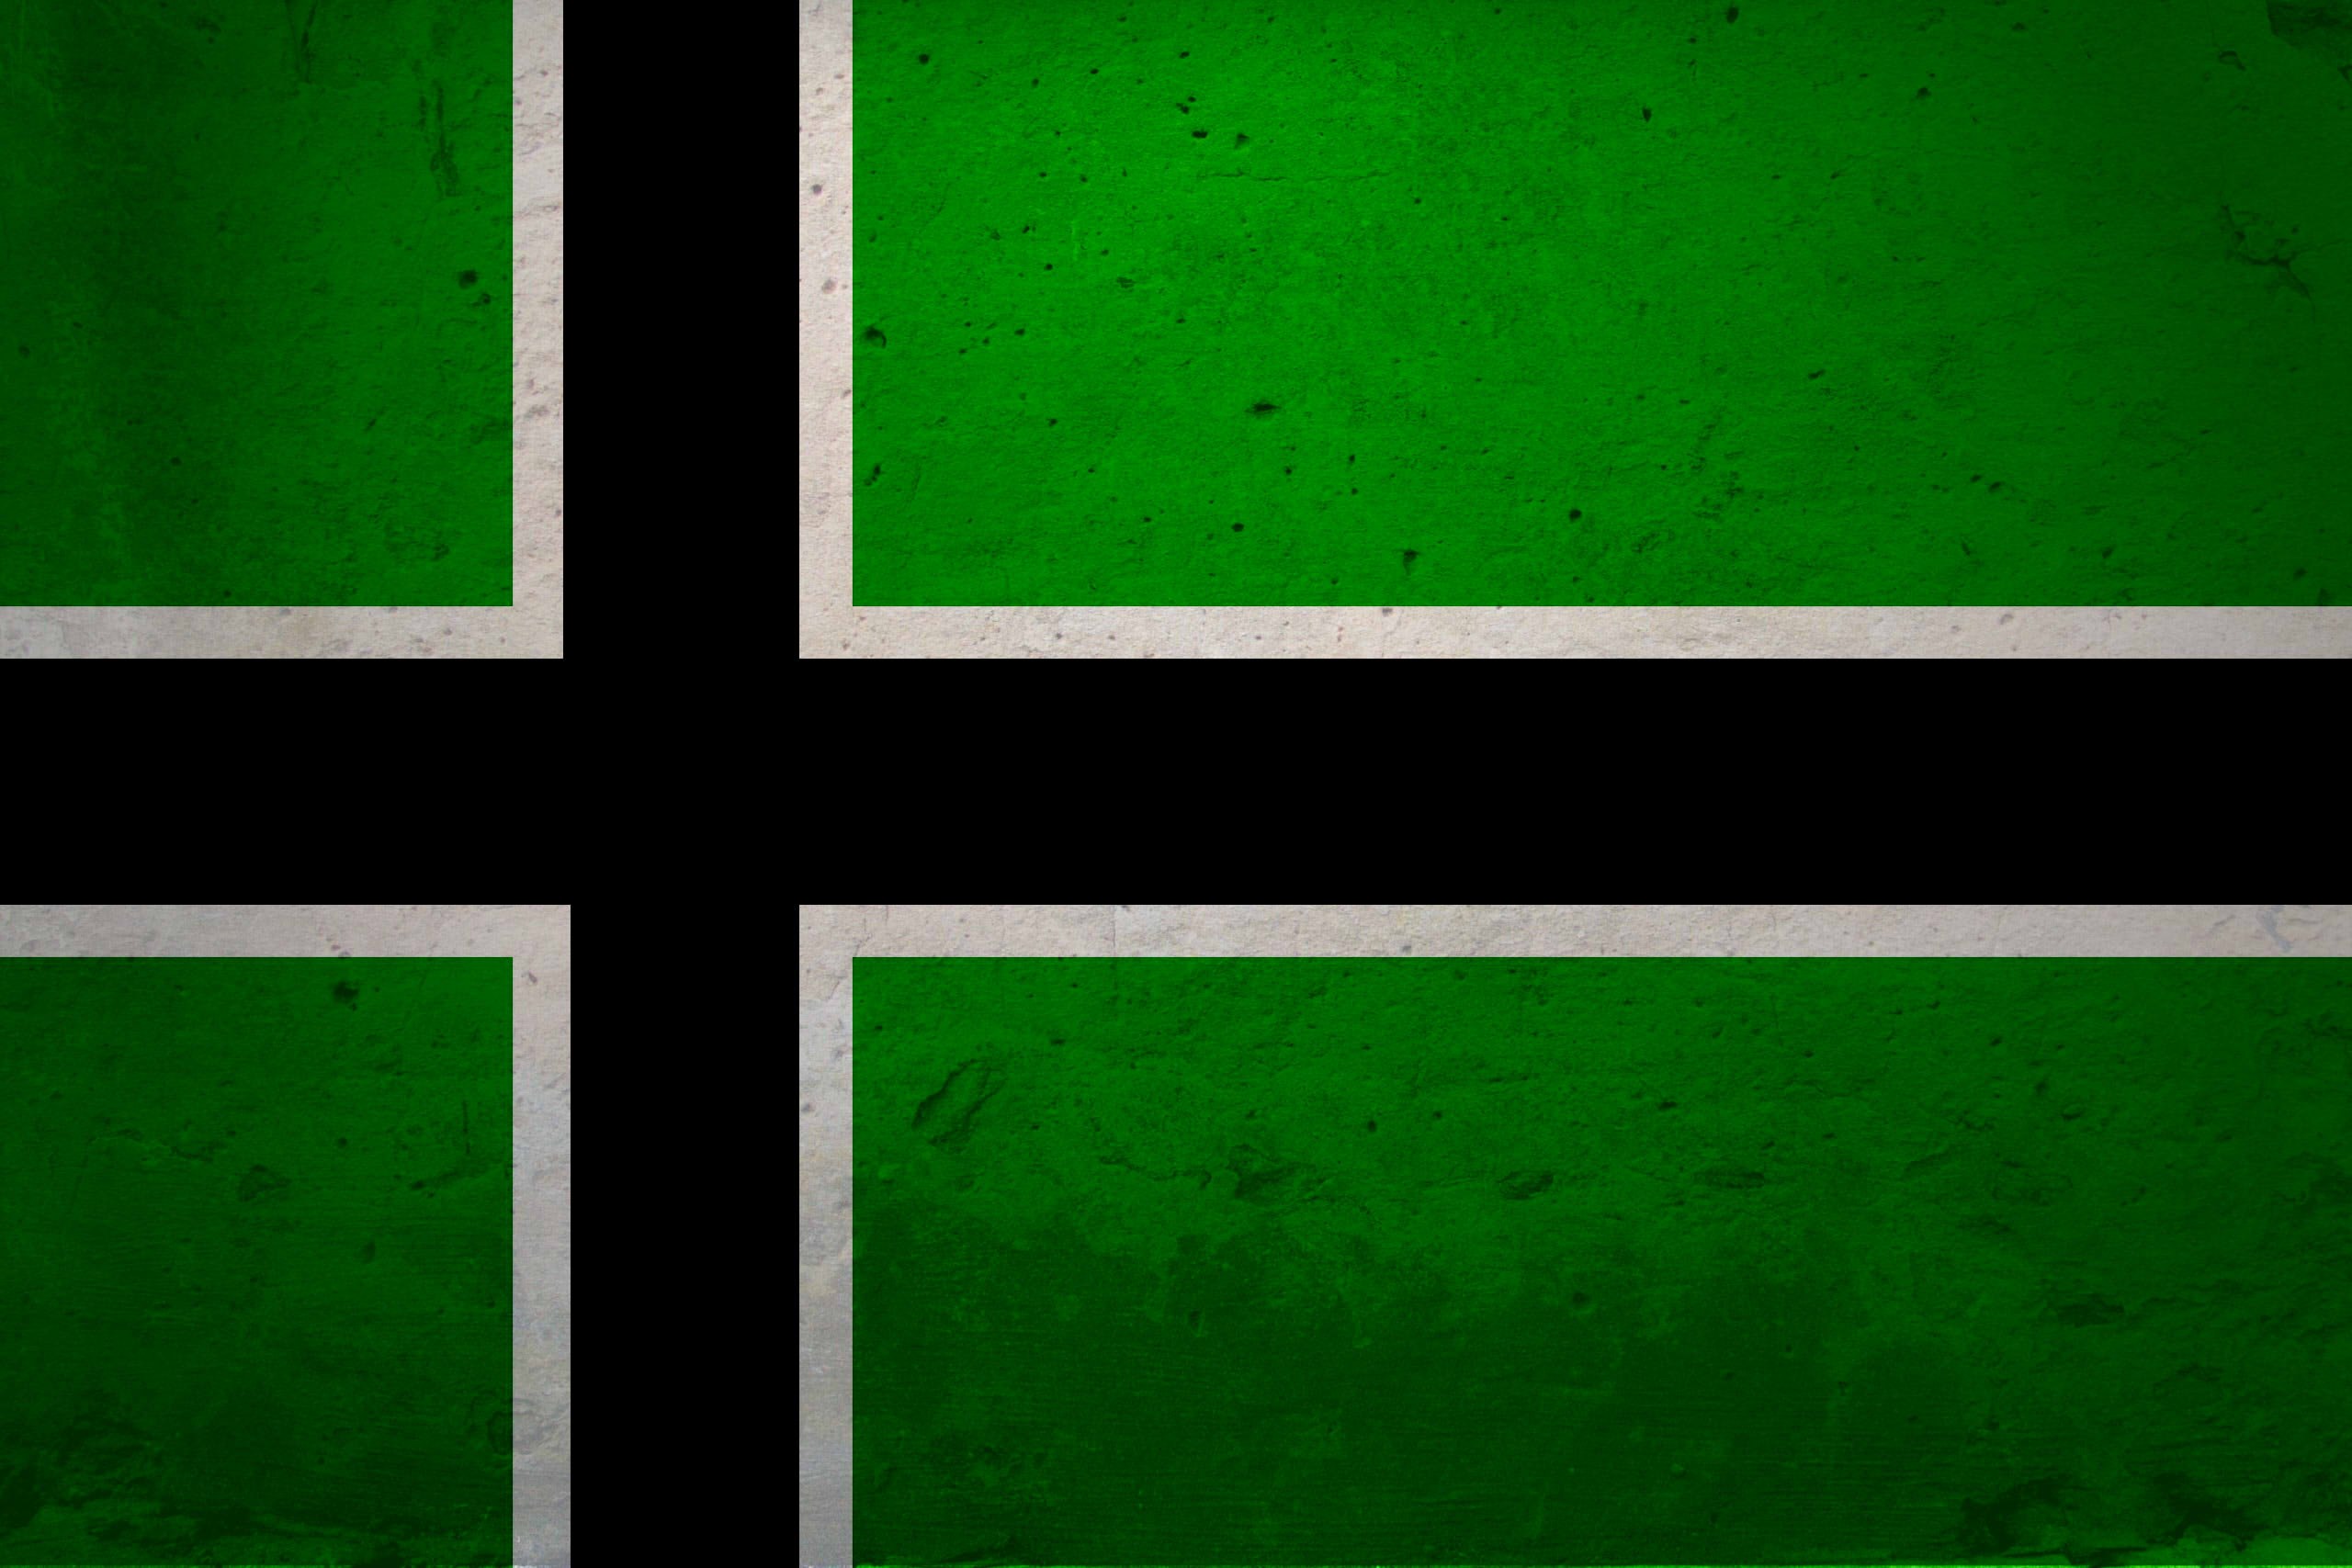 Правые левые зеленые. Type o negative флаг. Type o negative флаг зеленый с черным крестом. Зеленый флаг. Флаг с крестом.